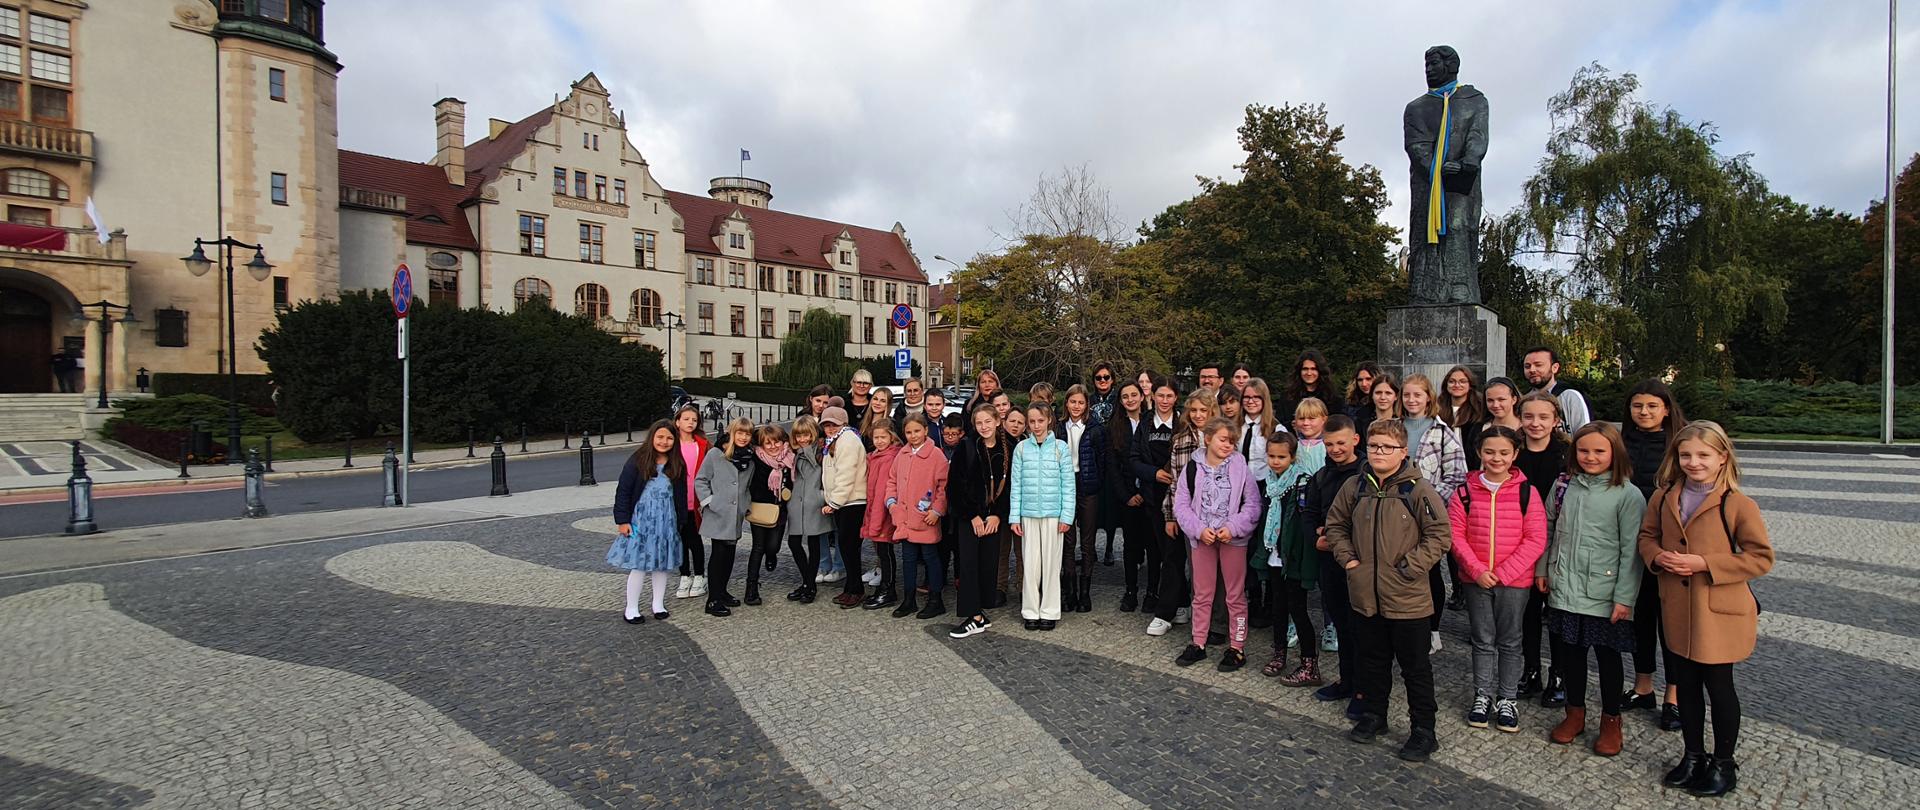 Uczniowie, rodzice i nauczyciele stojący na placu przed pomnikiem Adama Mickiewicza w Poznaniu.